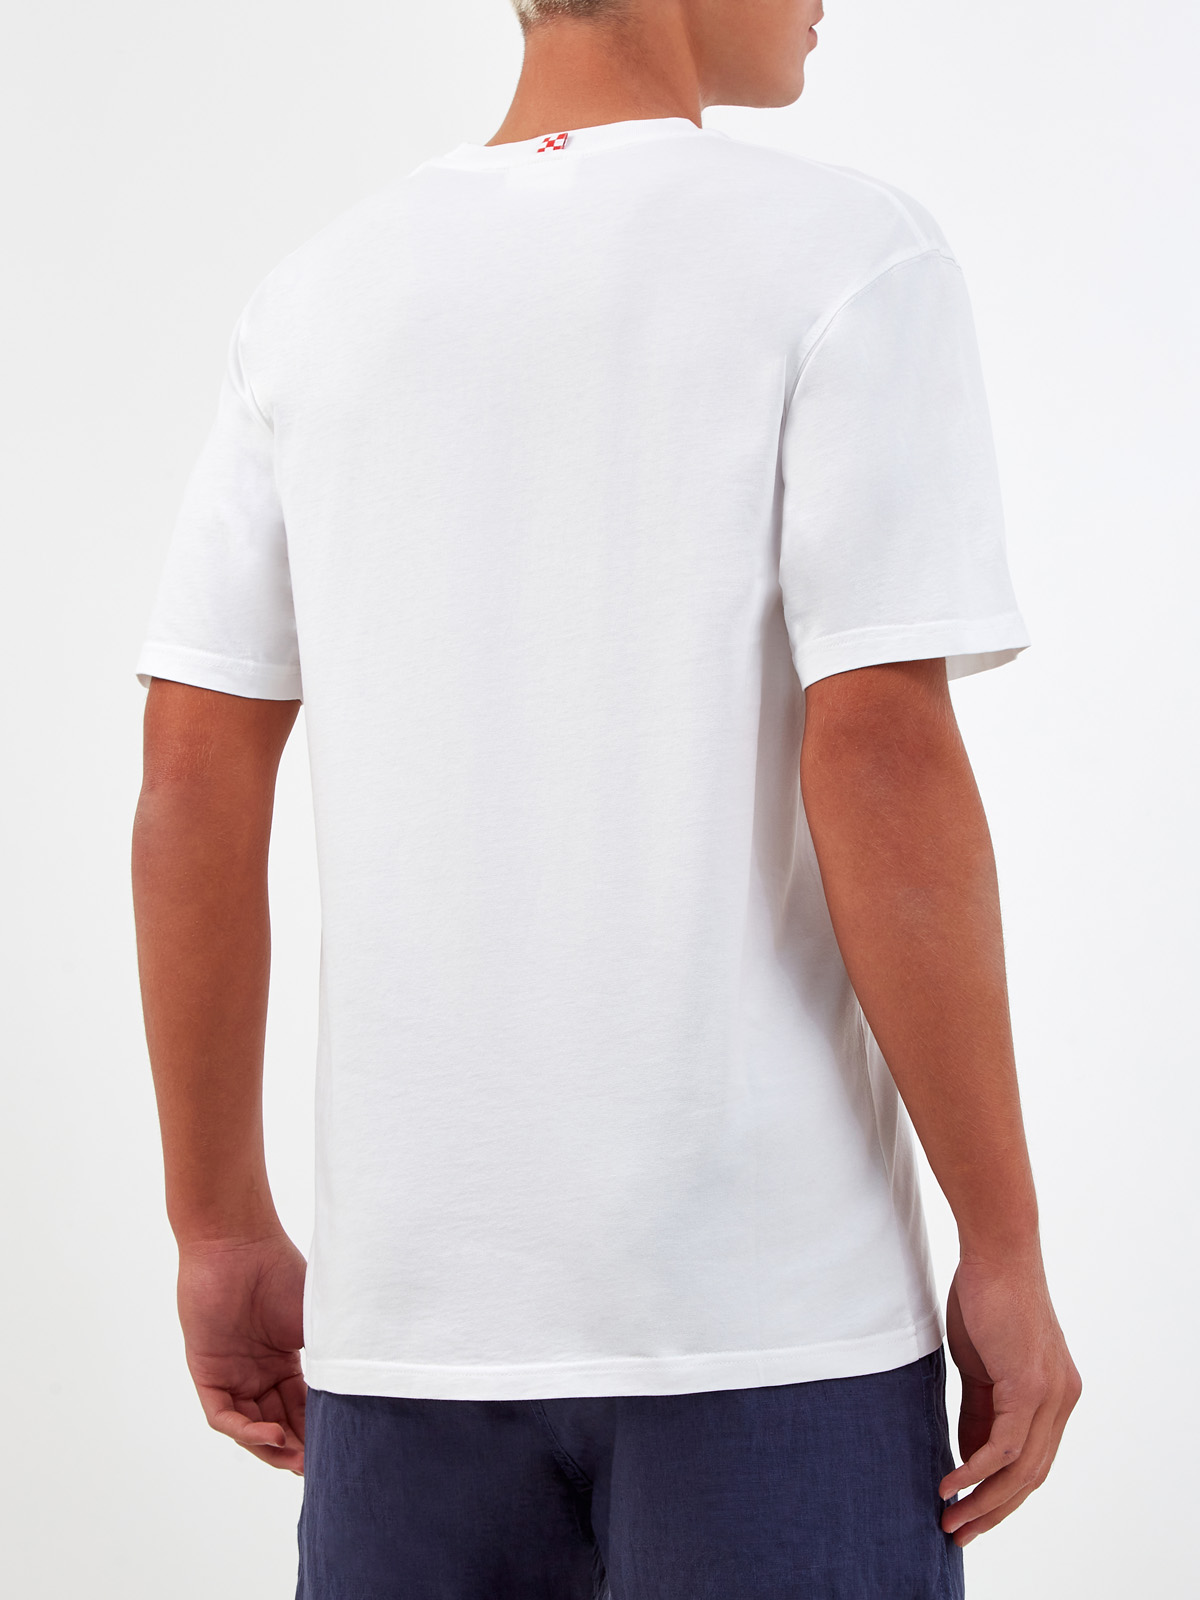 Свободная футболка из хлопка джерси с принтом MC2 SAINT BARTH, цвет белый, размер L;2XL - фото 4